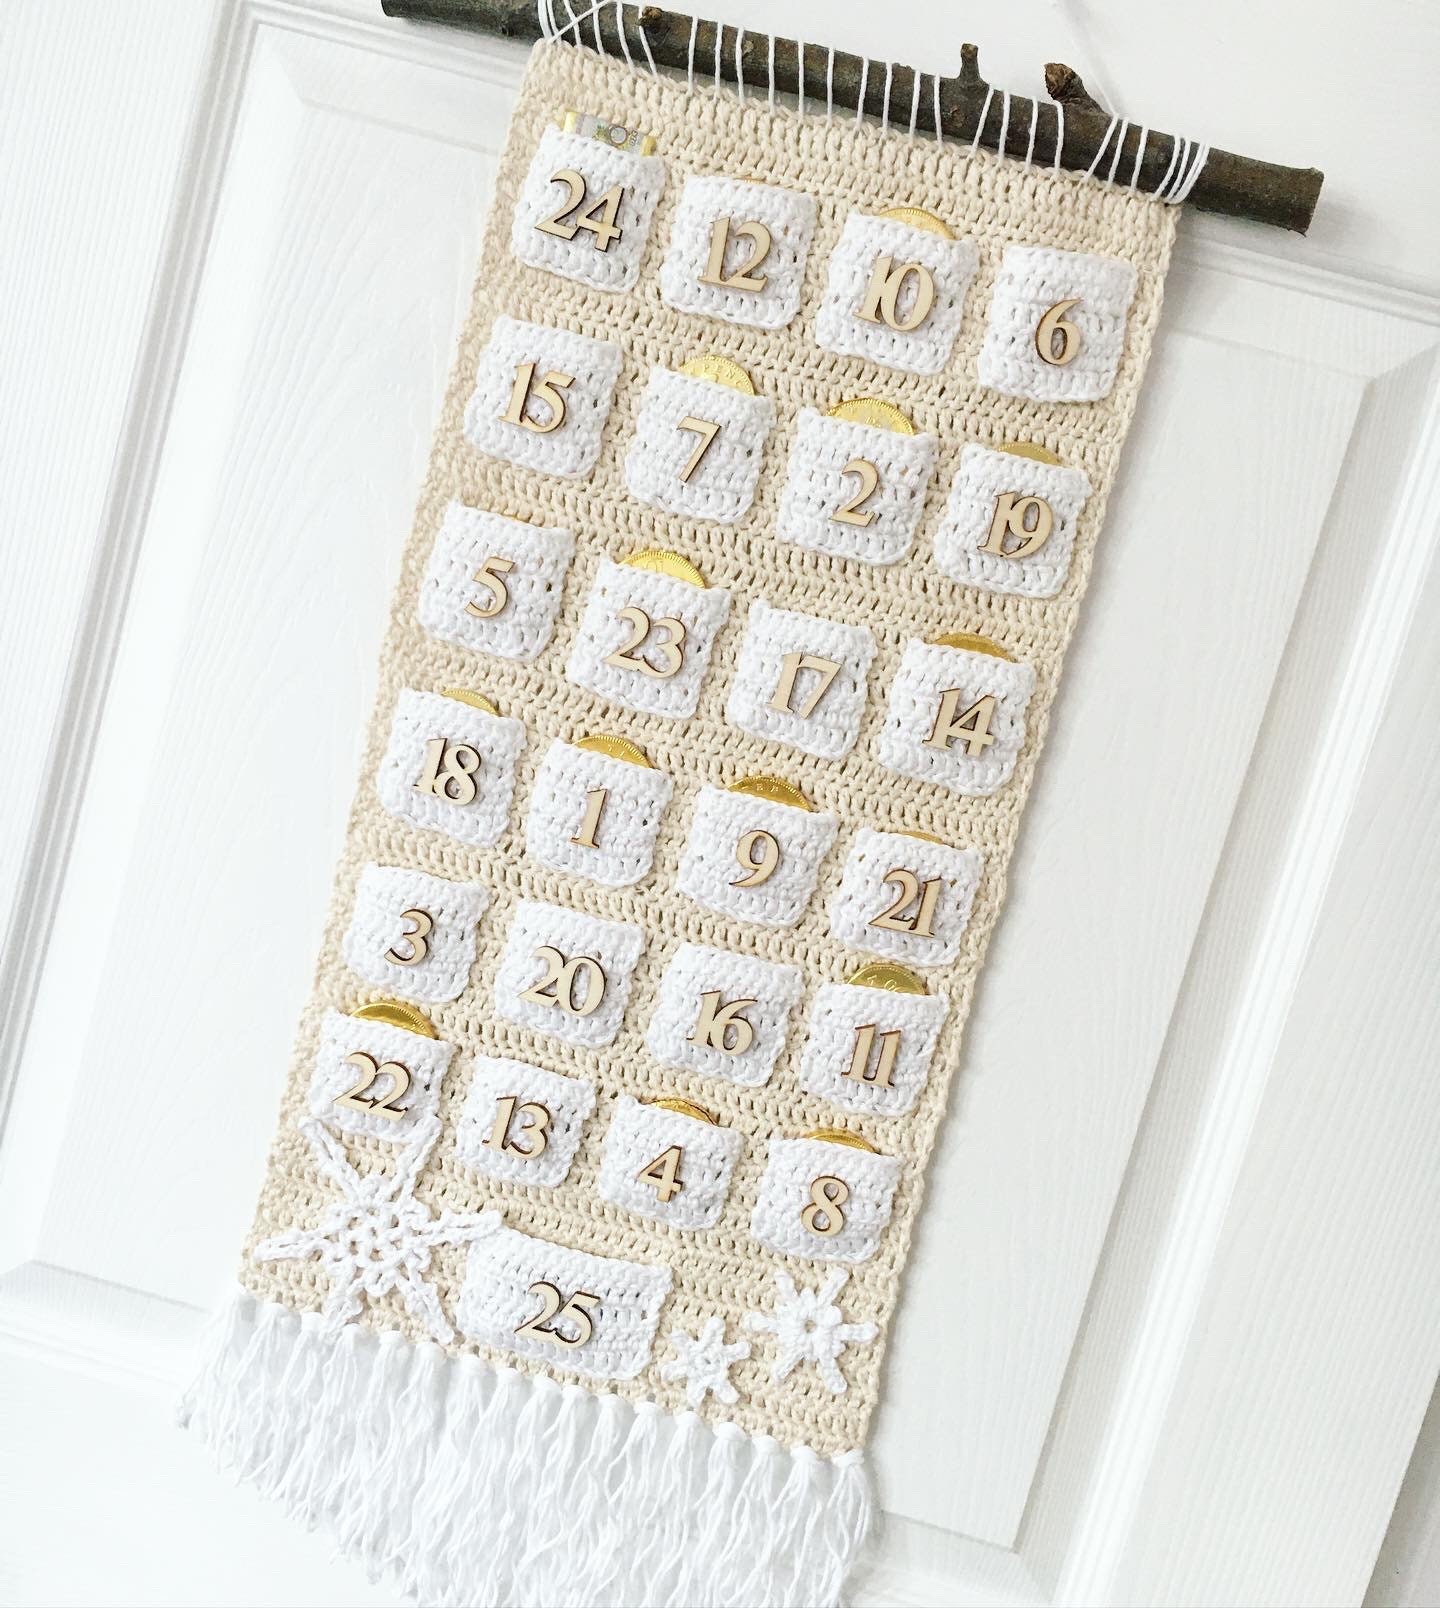 Beginners Crochet Blanket Kit. Easy DIY Crochet Blanket. Boho